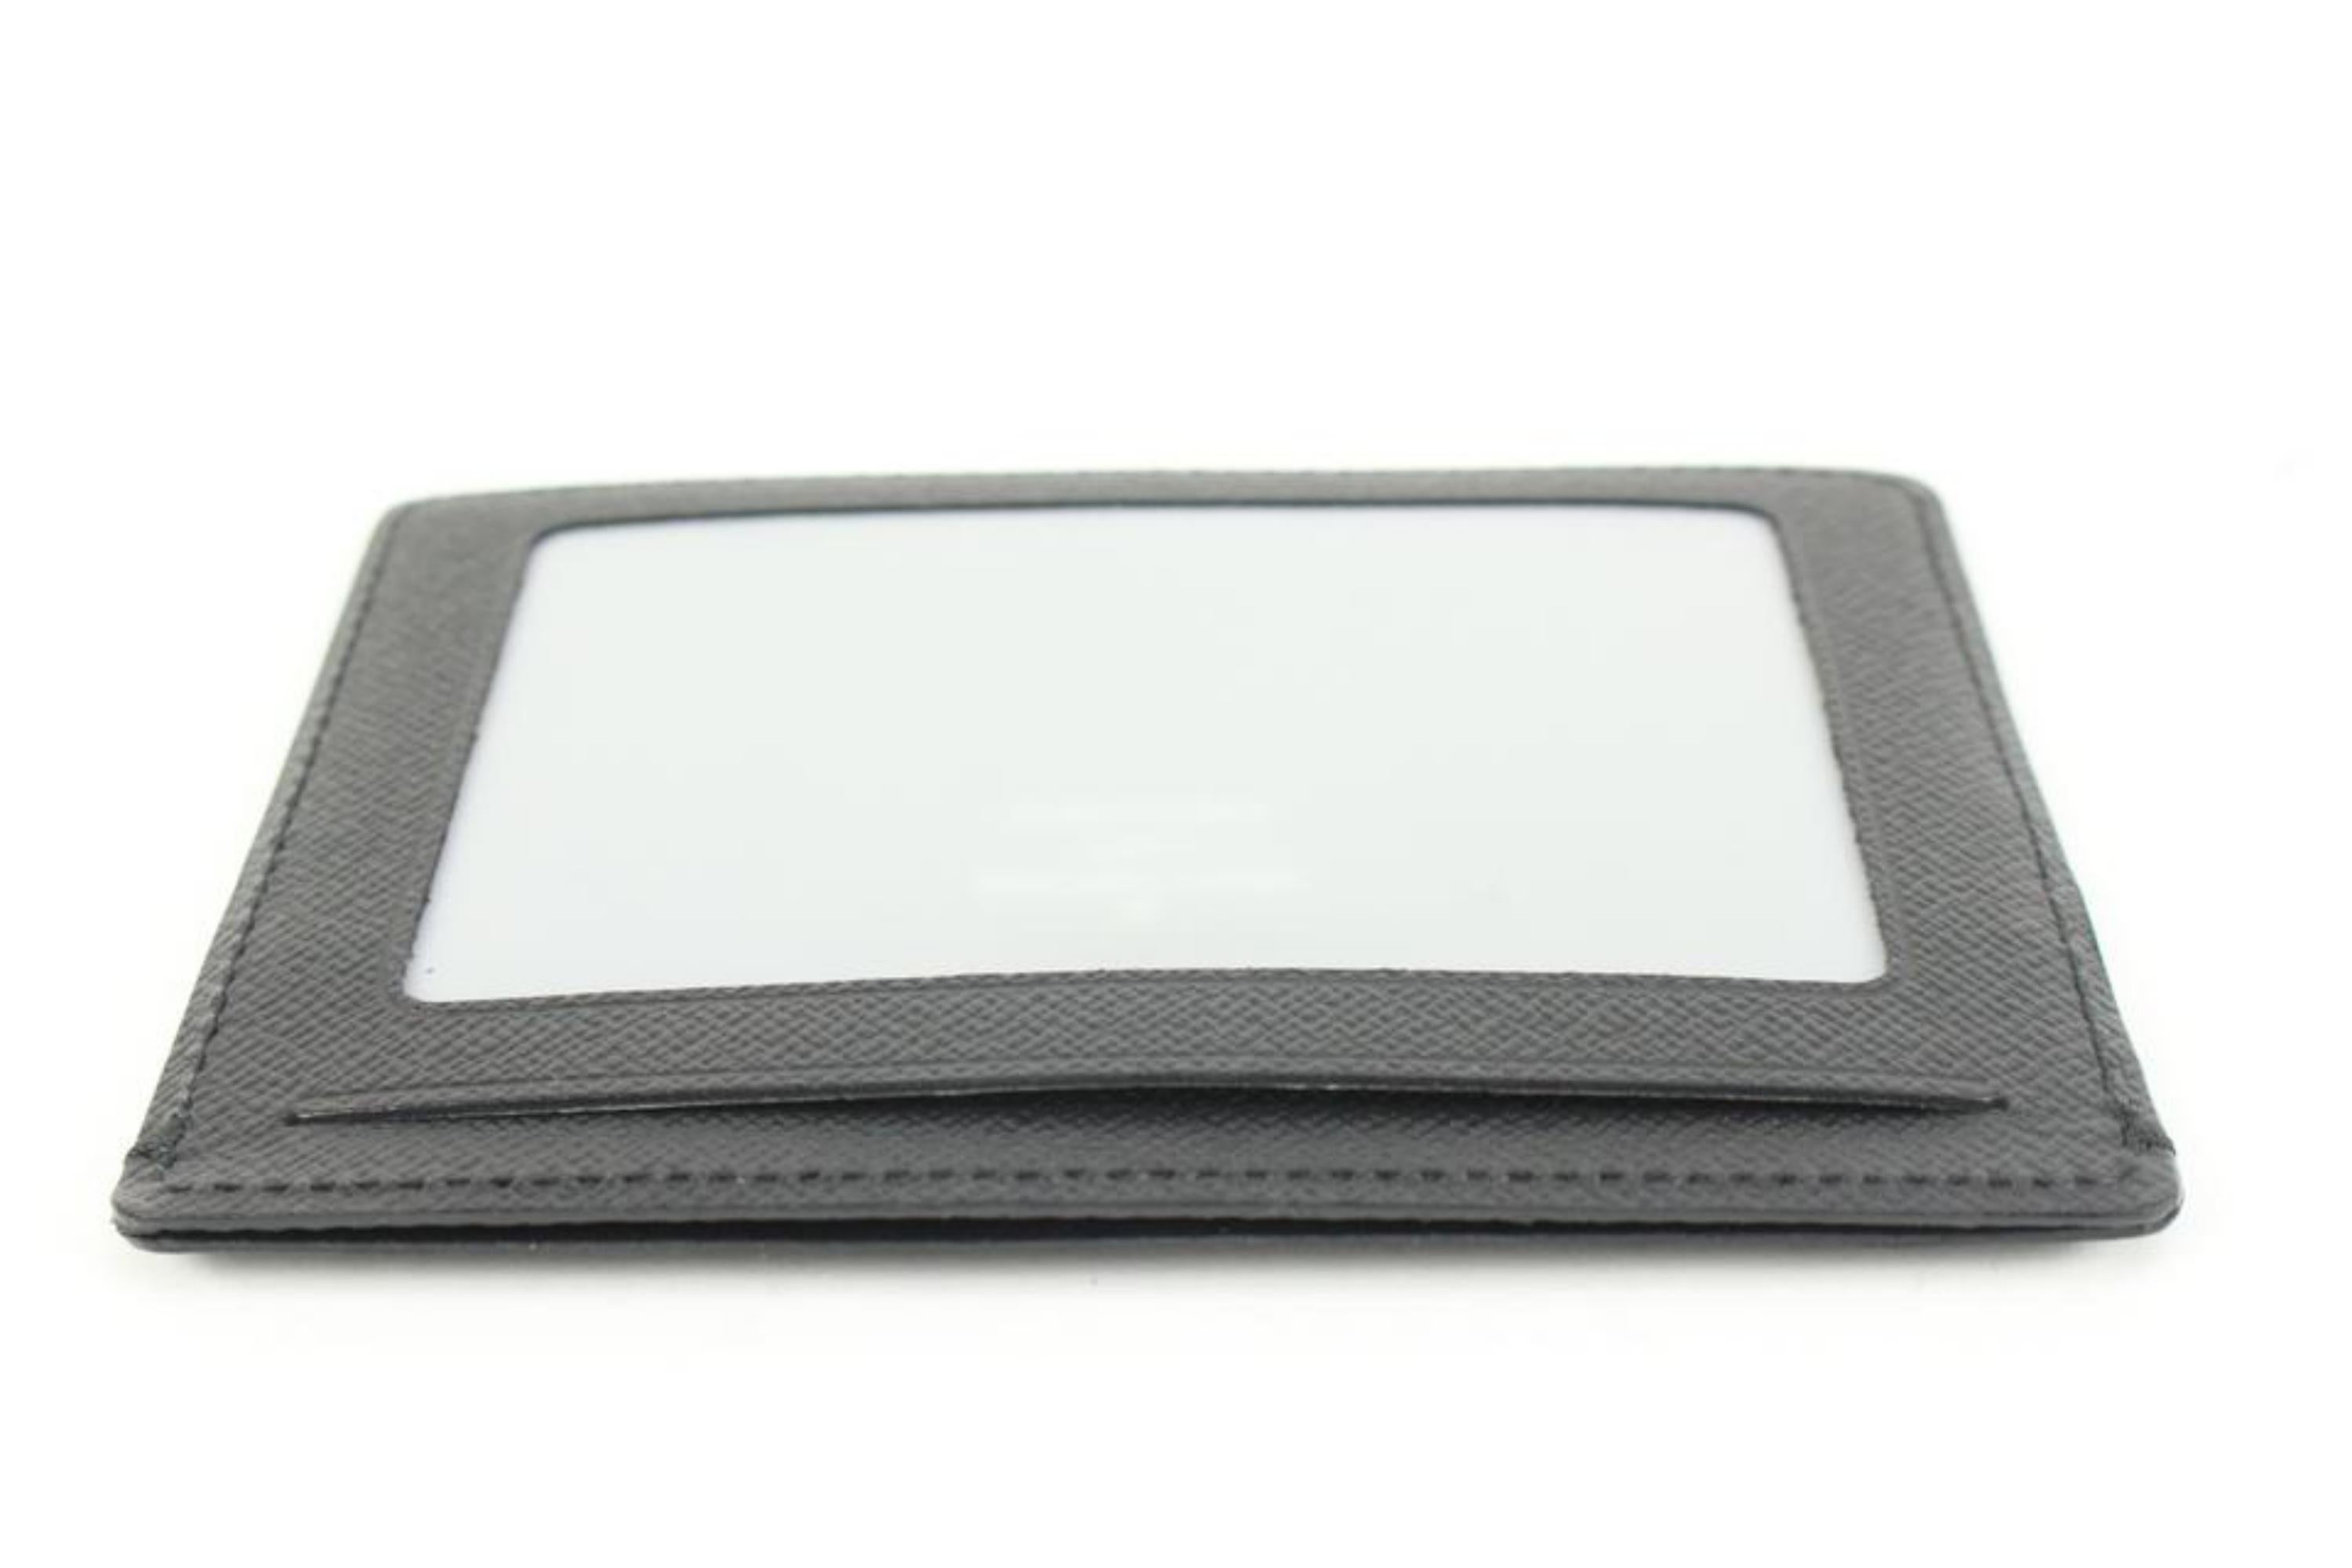 Louis Vuitton Black x Grey Damier Graphite Card Case Wallet Insert Holder 9lv321 3